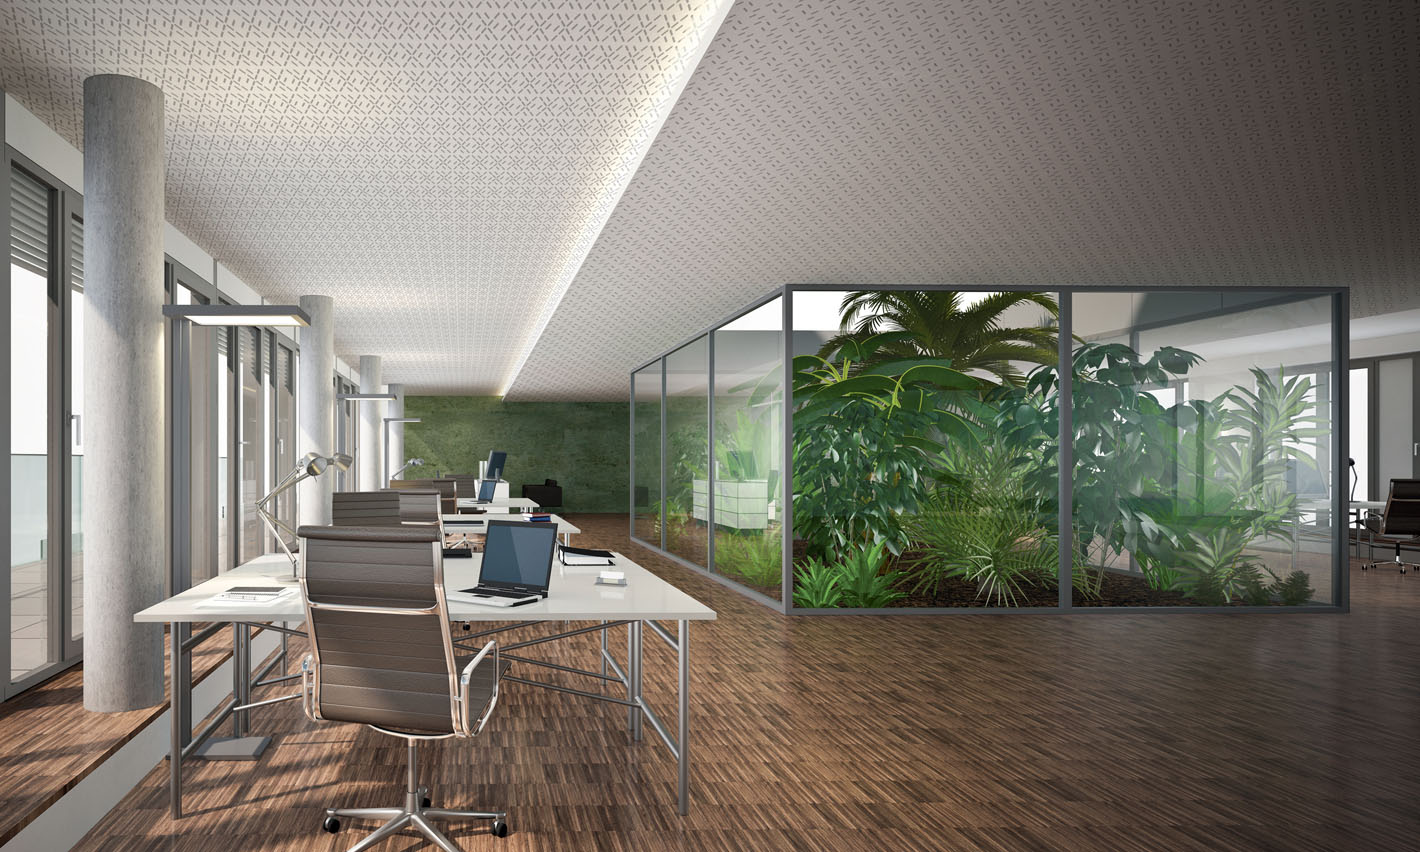 Plafond acoustique Siniat installé dans de jolis bureaux contemporains. Sol en parquet brut et patio végétalisé